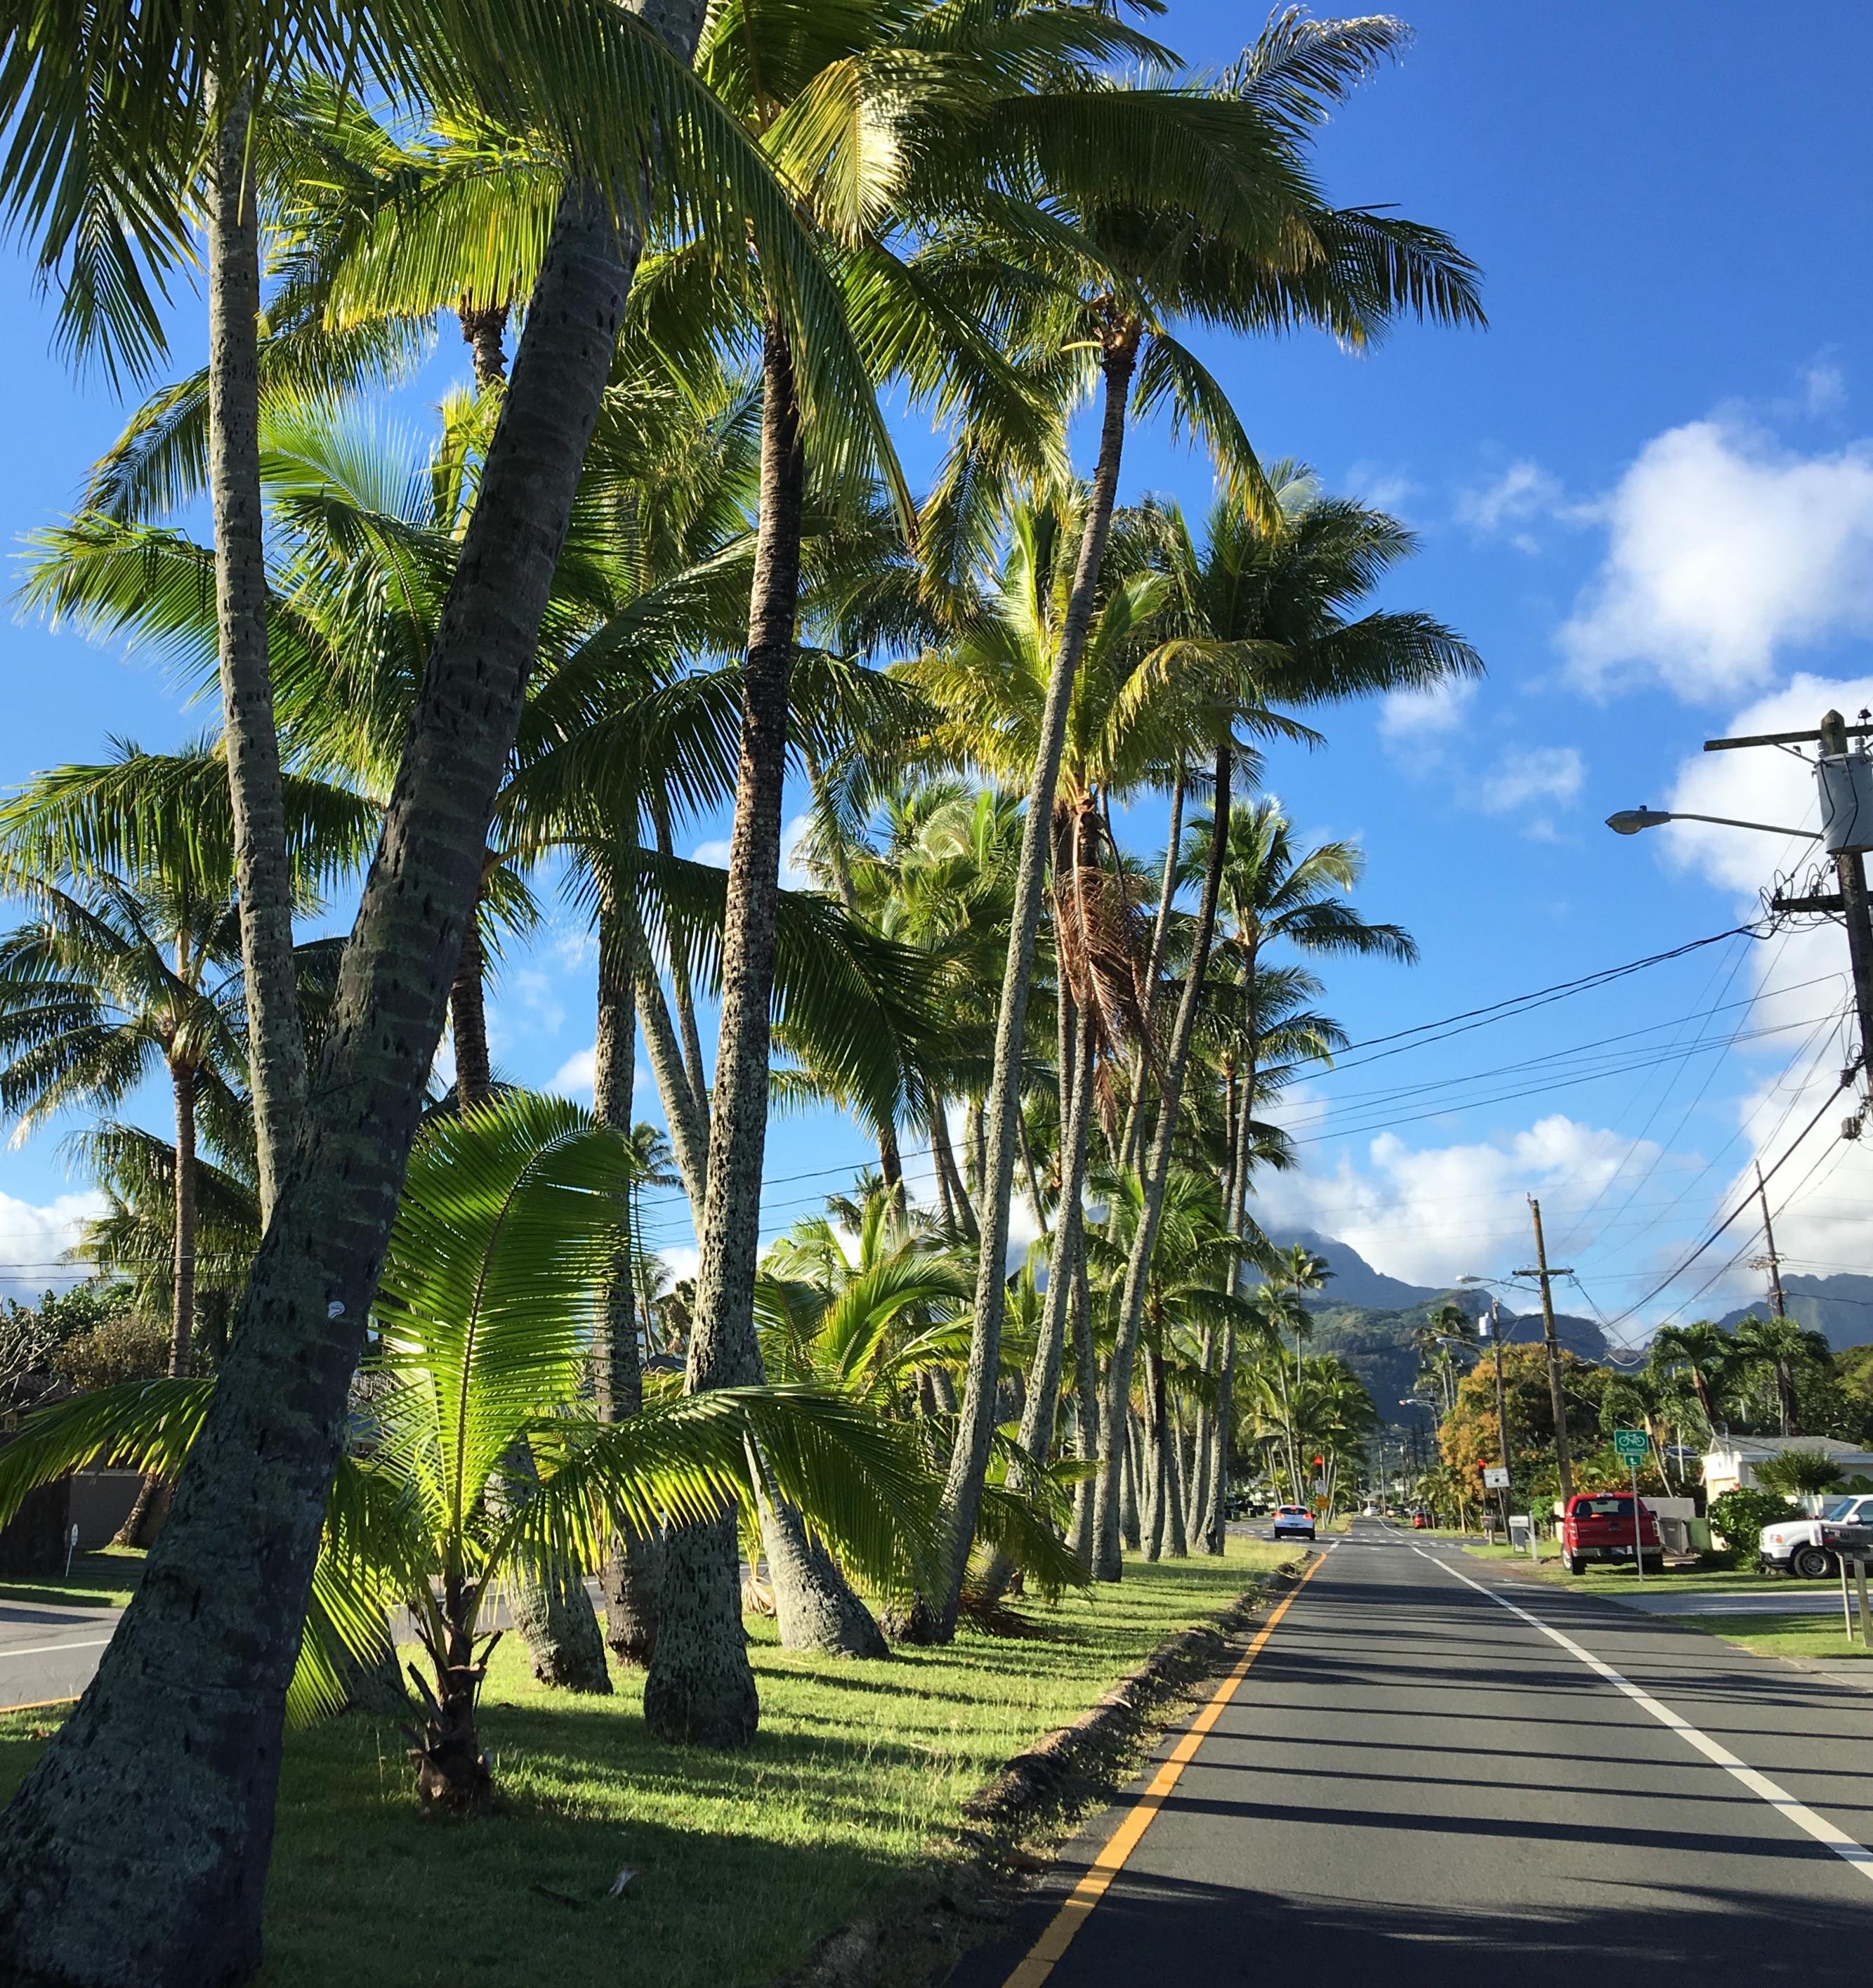 Palm tree lined street in Oahu, Hawaii